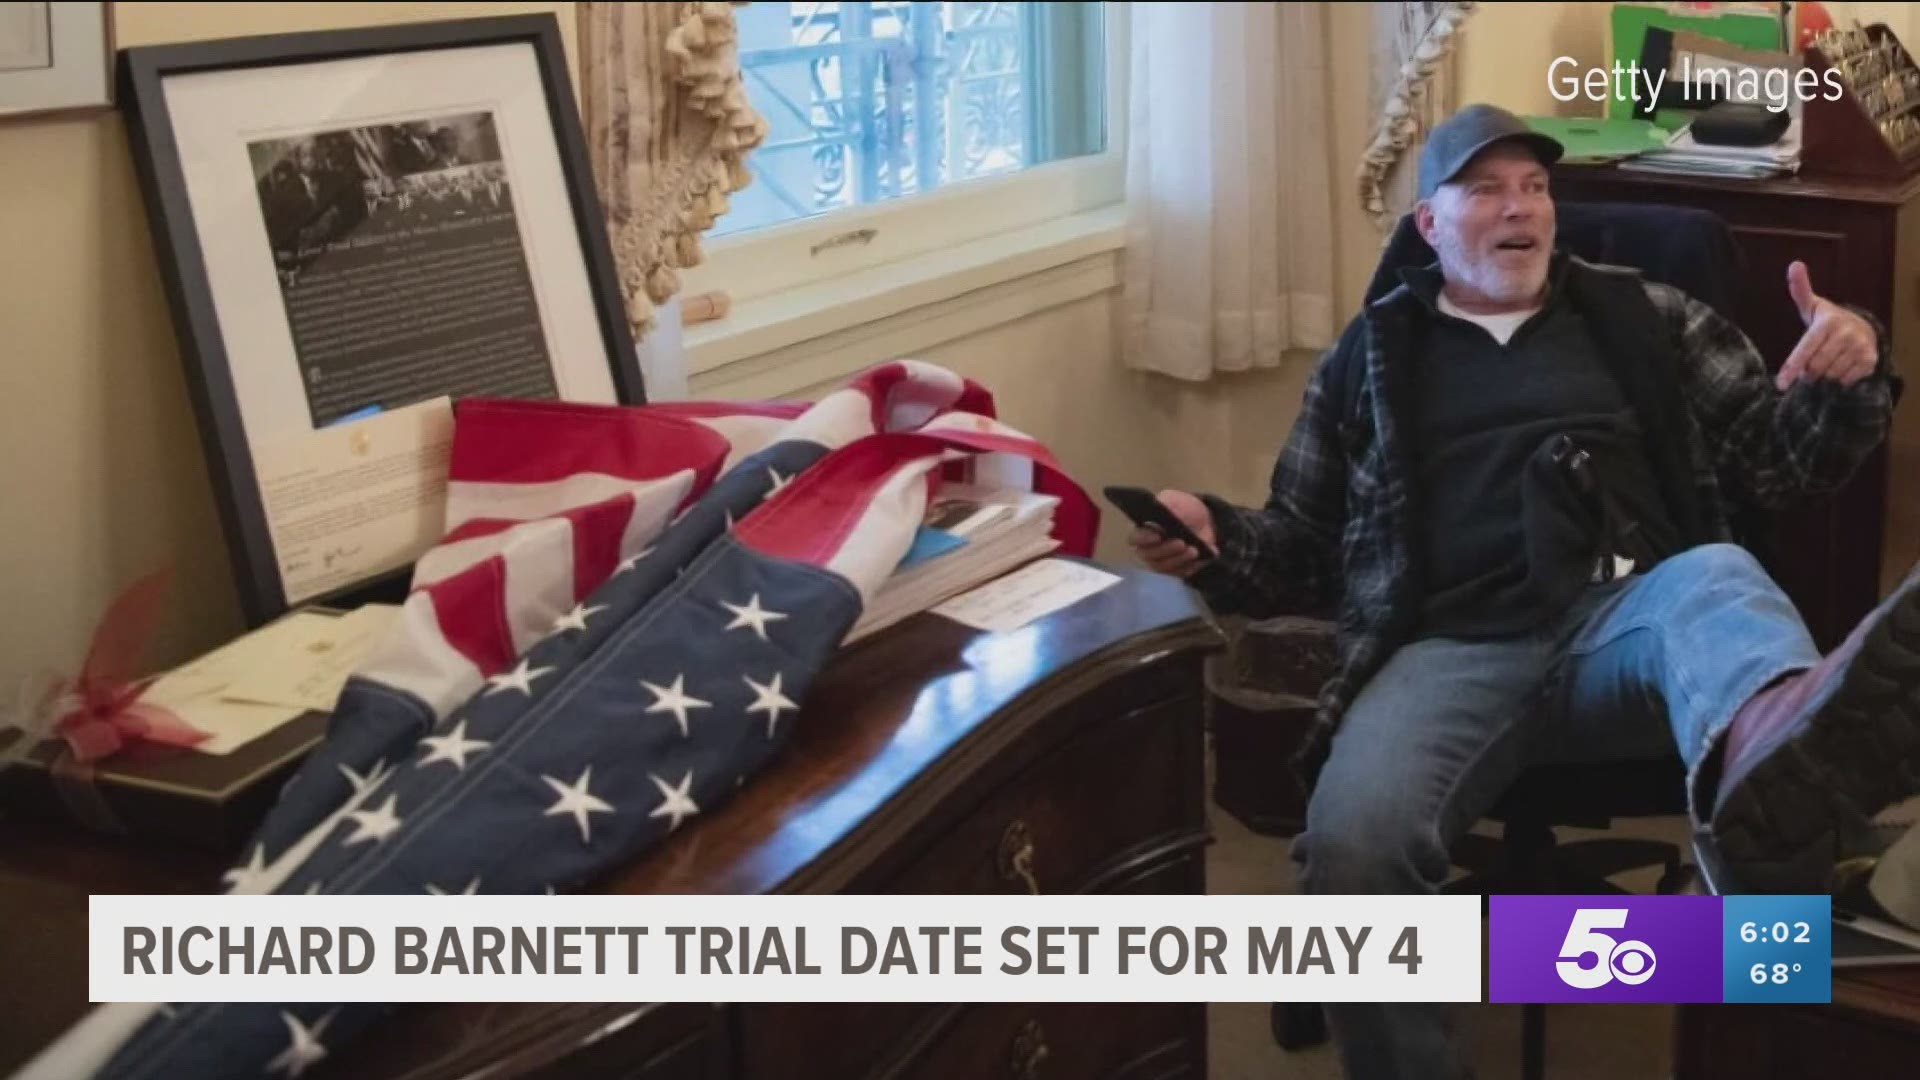 Richard Barnett trial date set for May 4